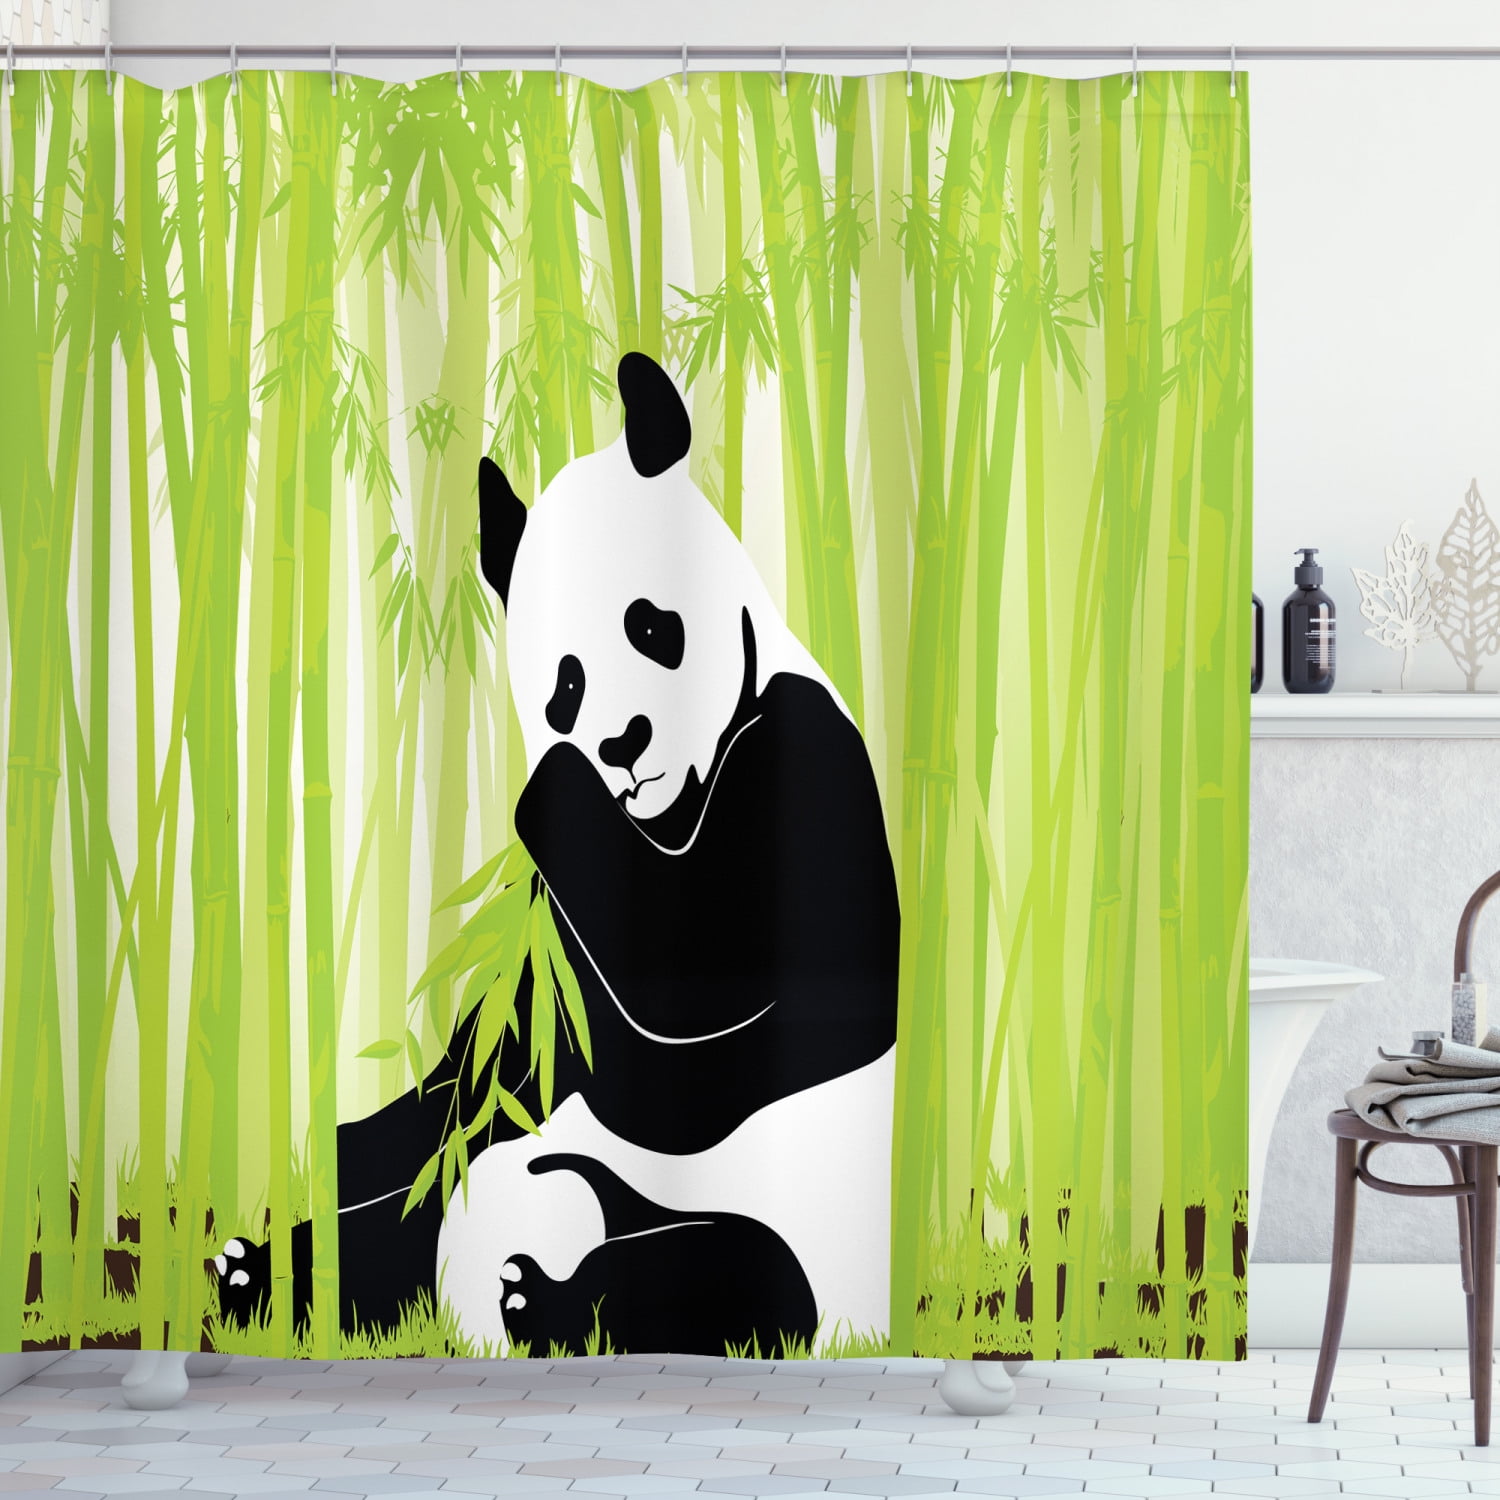 Cartoon Forest Animals Green Bamboo Fabric Shower Curtain Hooks Bathroom Mat LB 